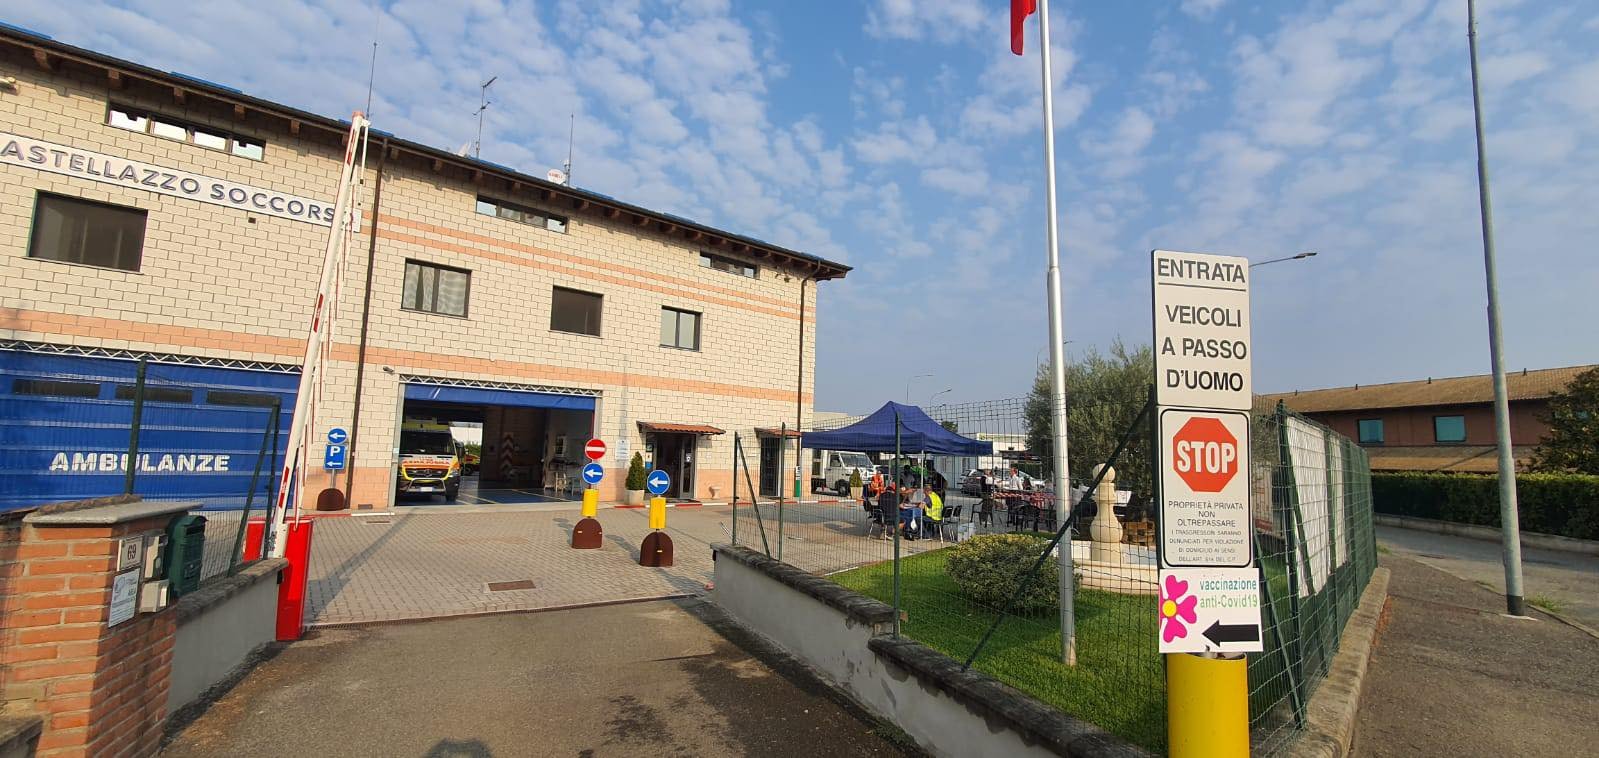 Centro vaccini Castellazzo Soccorso: i nuovi orari da lunedì. Stop agli accessi diretti